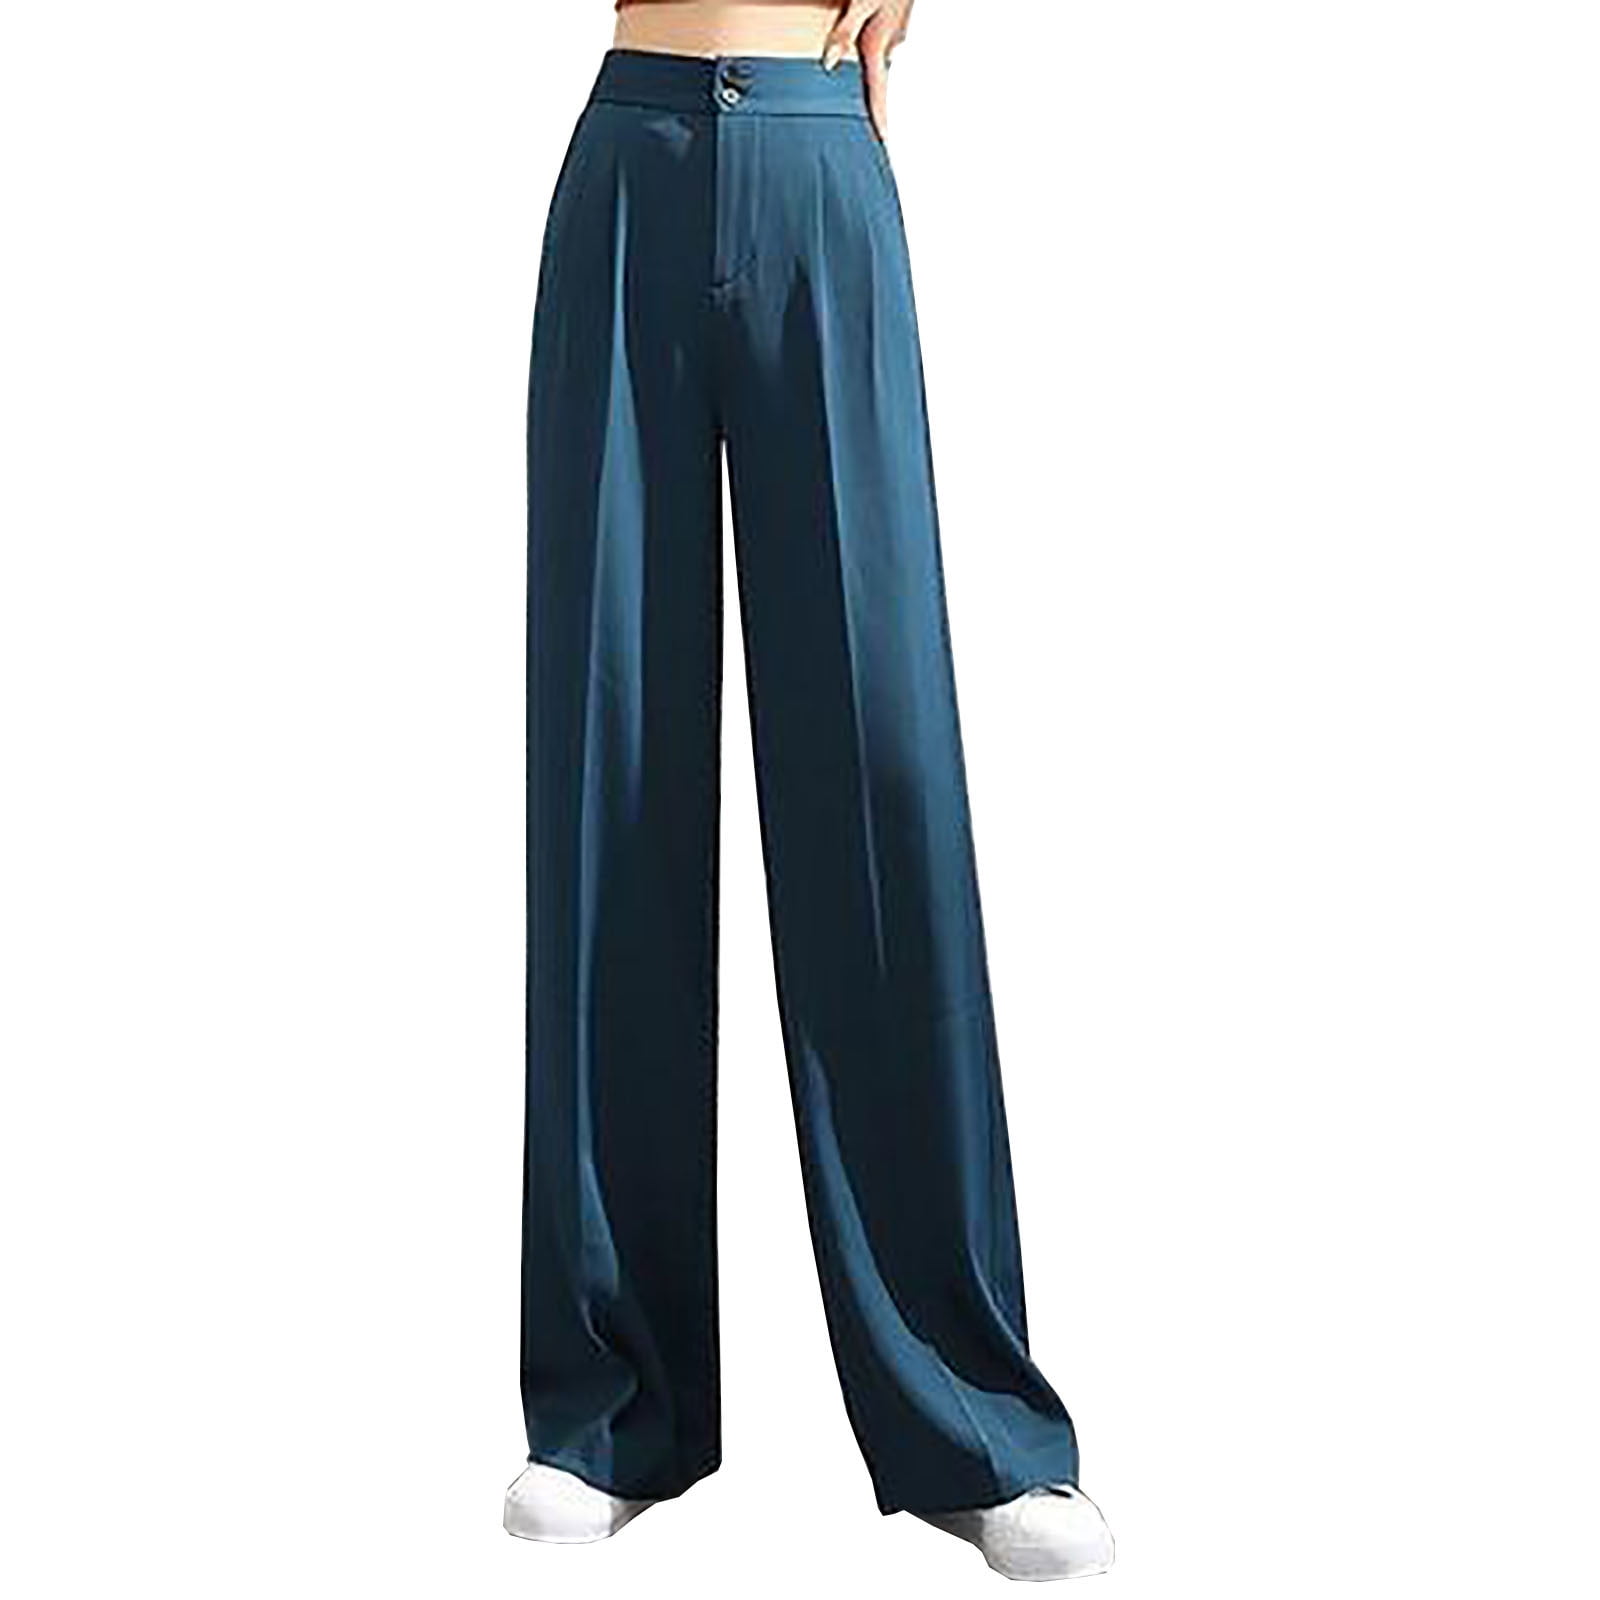 How To Wear Linen Pants [2023]: 60+ Modern & Chic Linen Pants Outfit Ideas  To Copy in 2023 | Linen pants outfit, Linen pants women, Linen pants outfit  summer